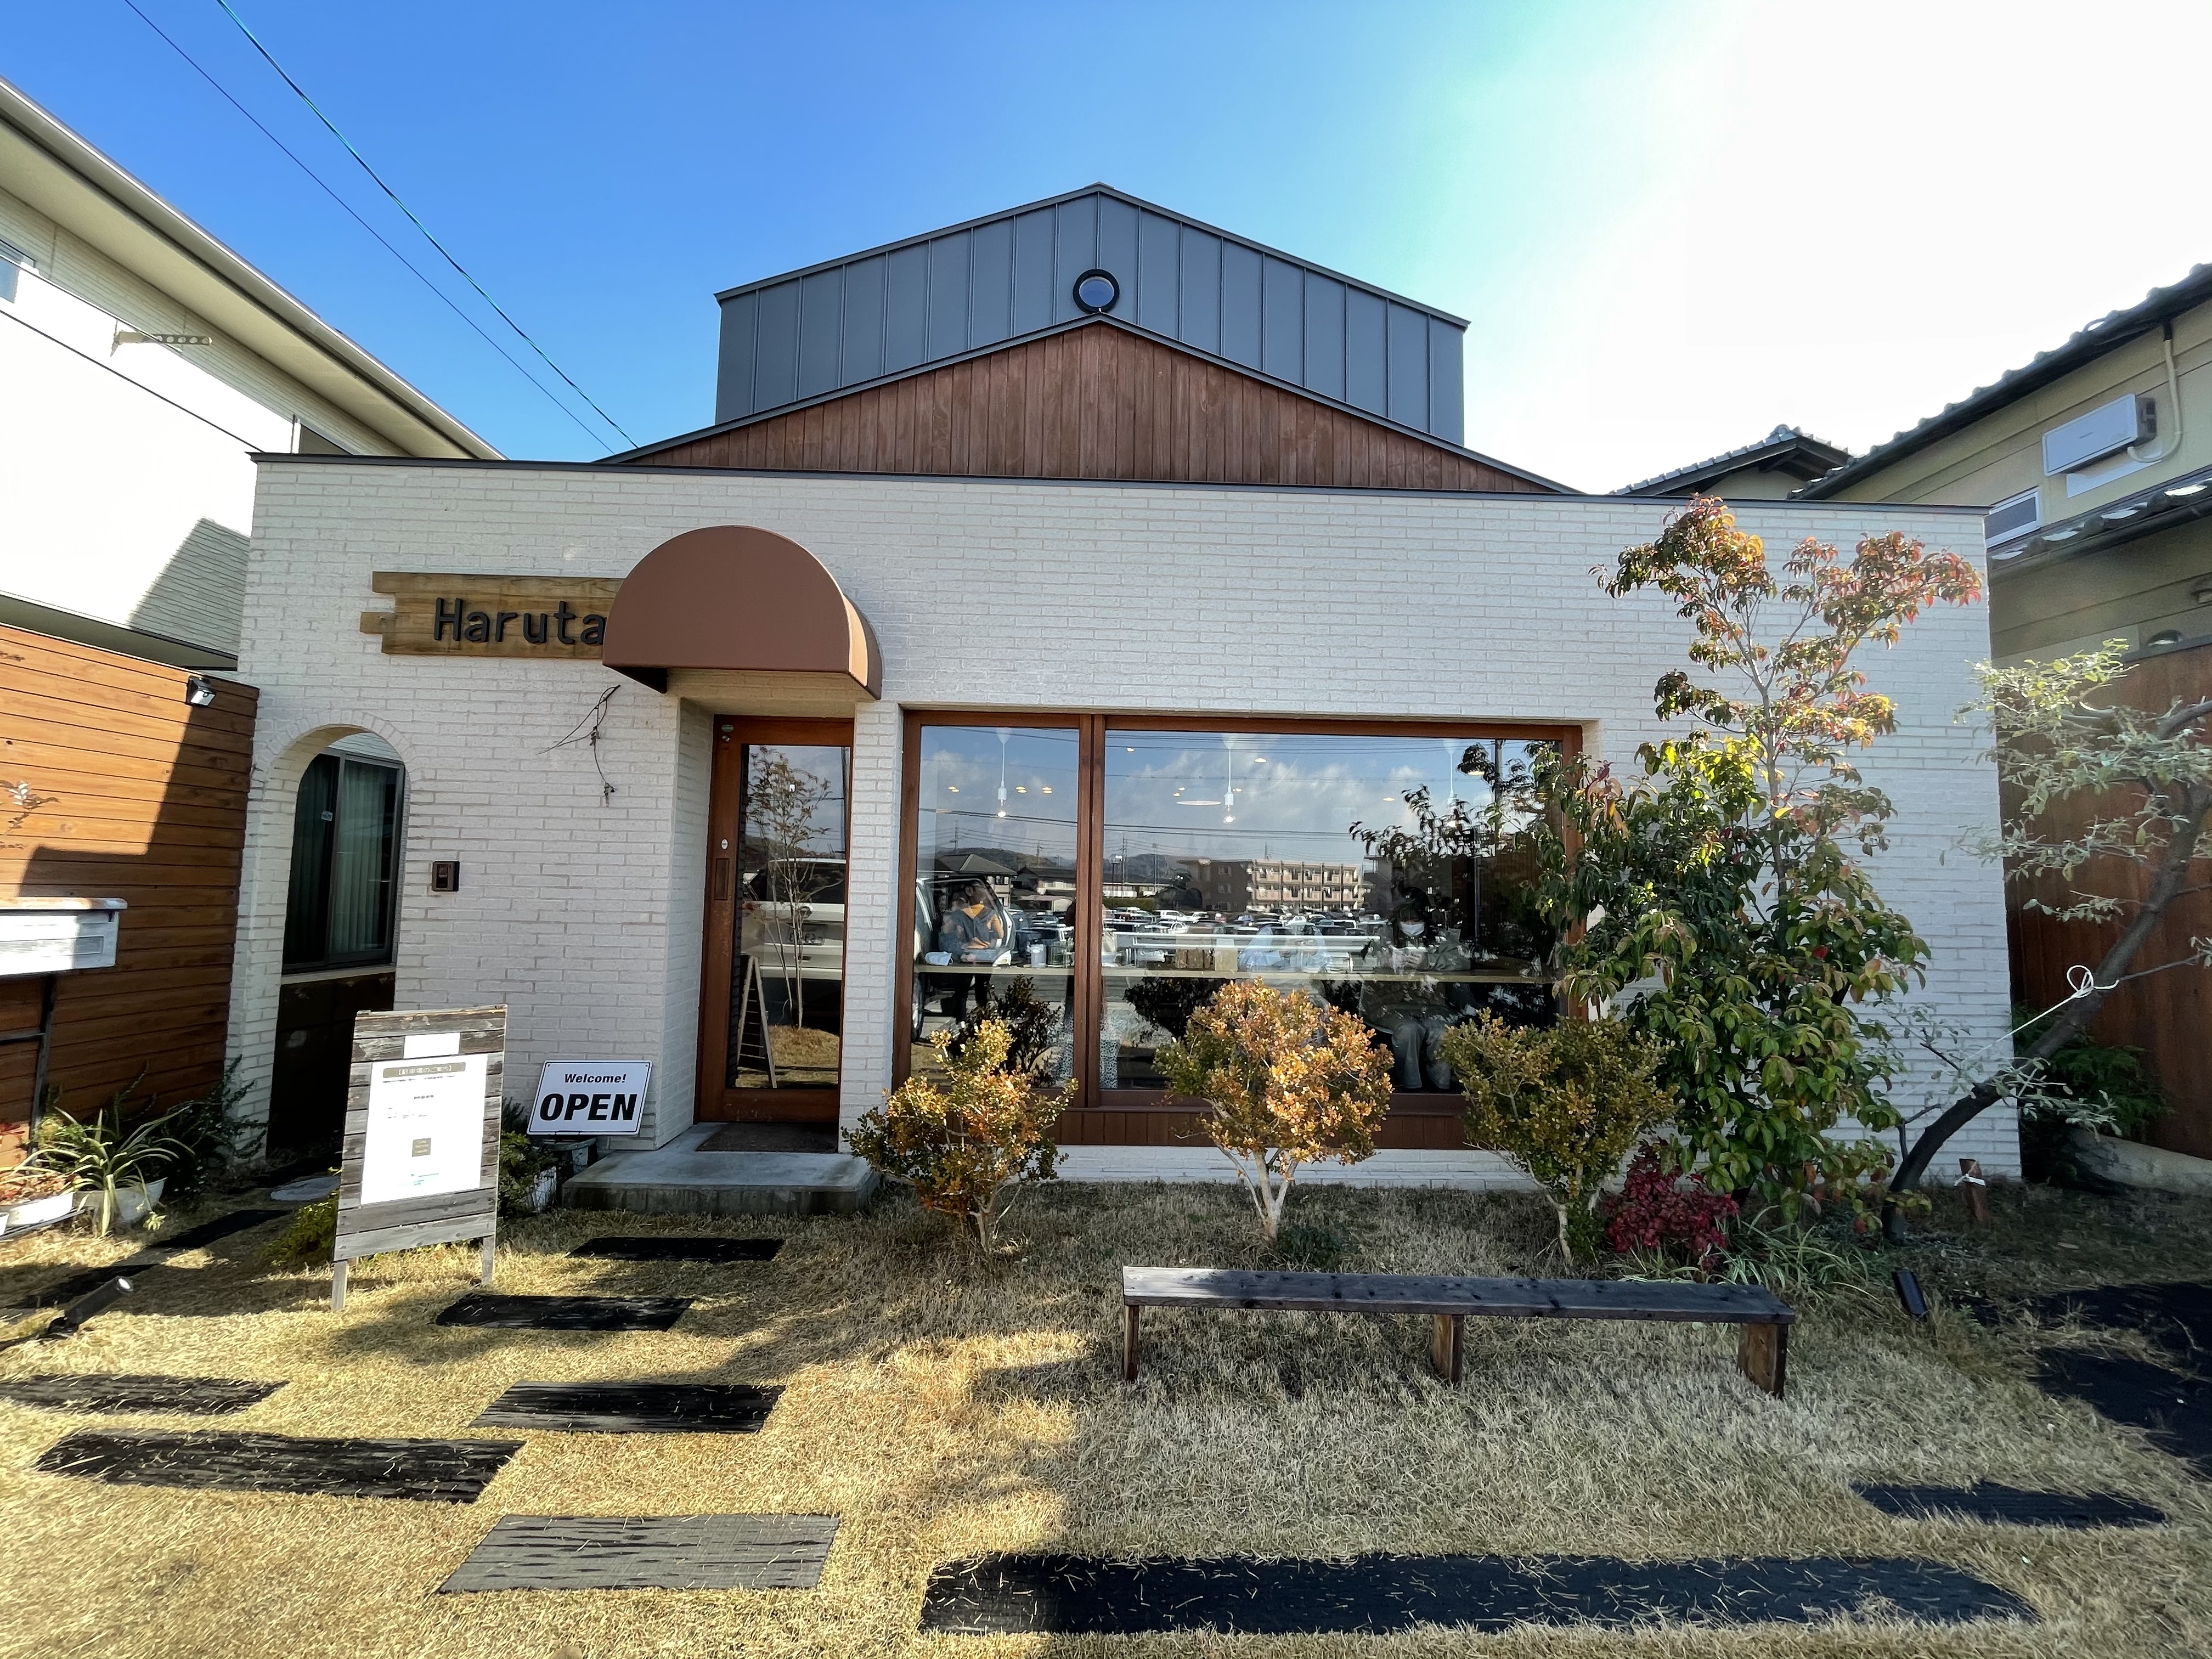 Cafe Haruta 倉敷で人気のお洒落カフェで自家製パンチェッタのドリア 映えカレーのランチ まるごと岡山食べ尽くし日記